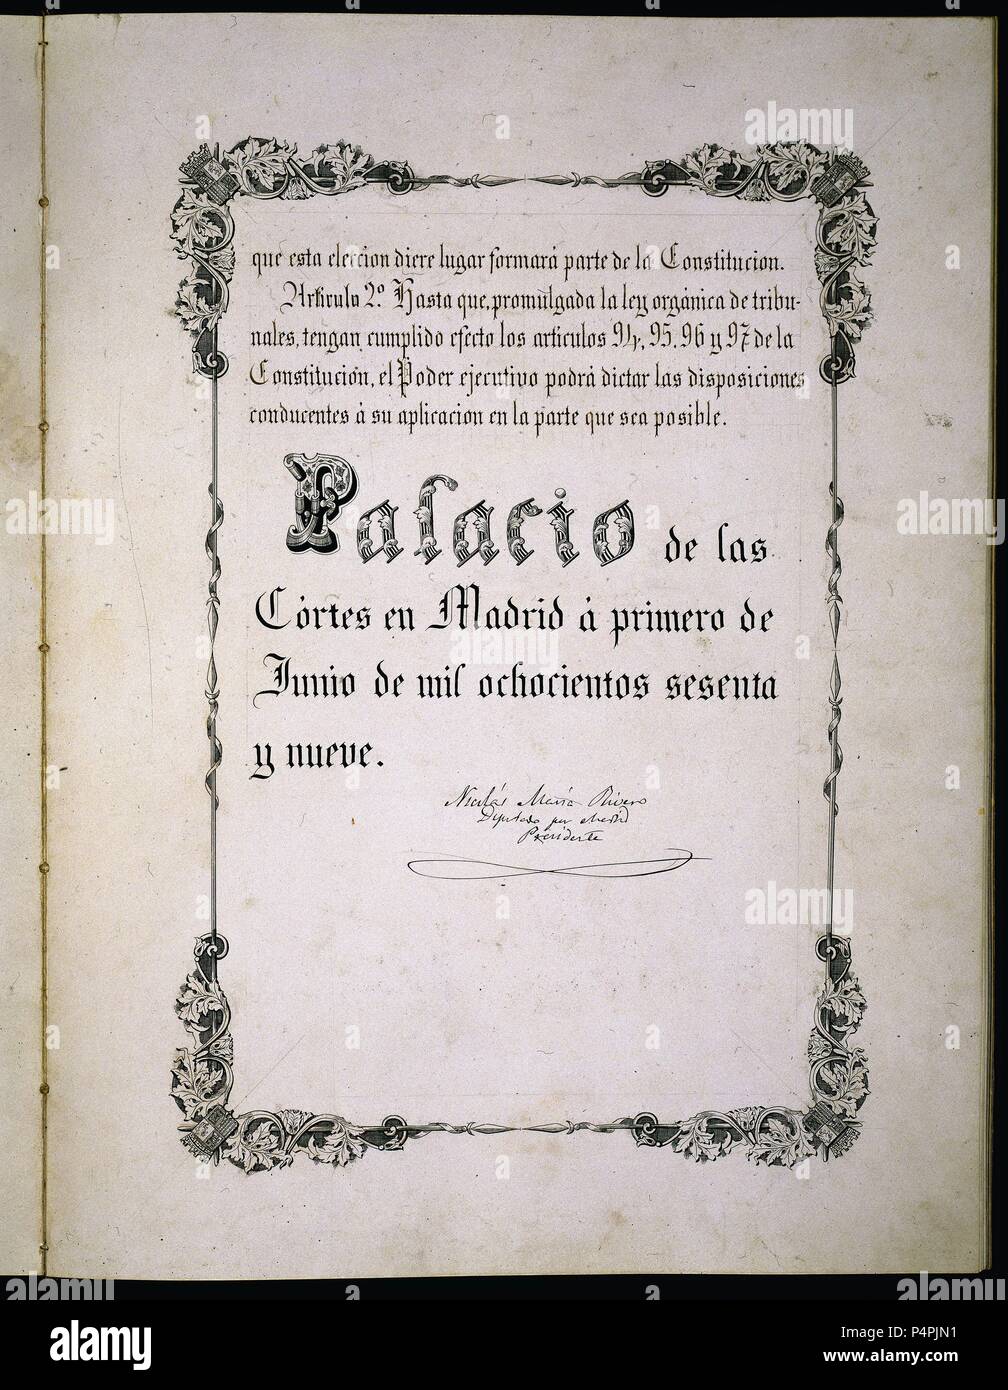 CONSTITUCION DE 1869- PAGINA -ARTICULO 2º. Location: CONGRESO DE LOS DIPUTADOS-BIBLIOTECA, MADRID, SPAIN. Stock Photo